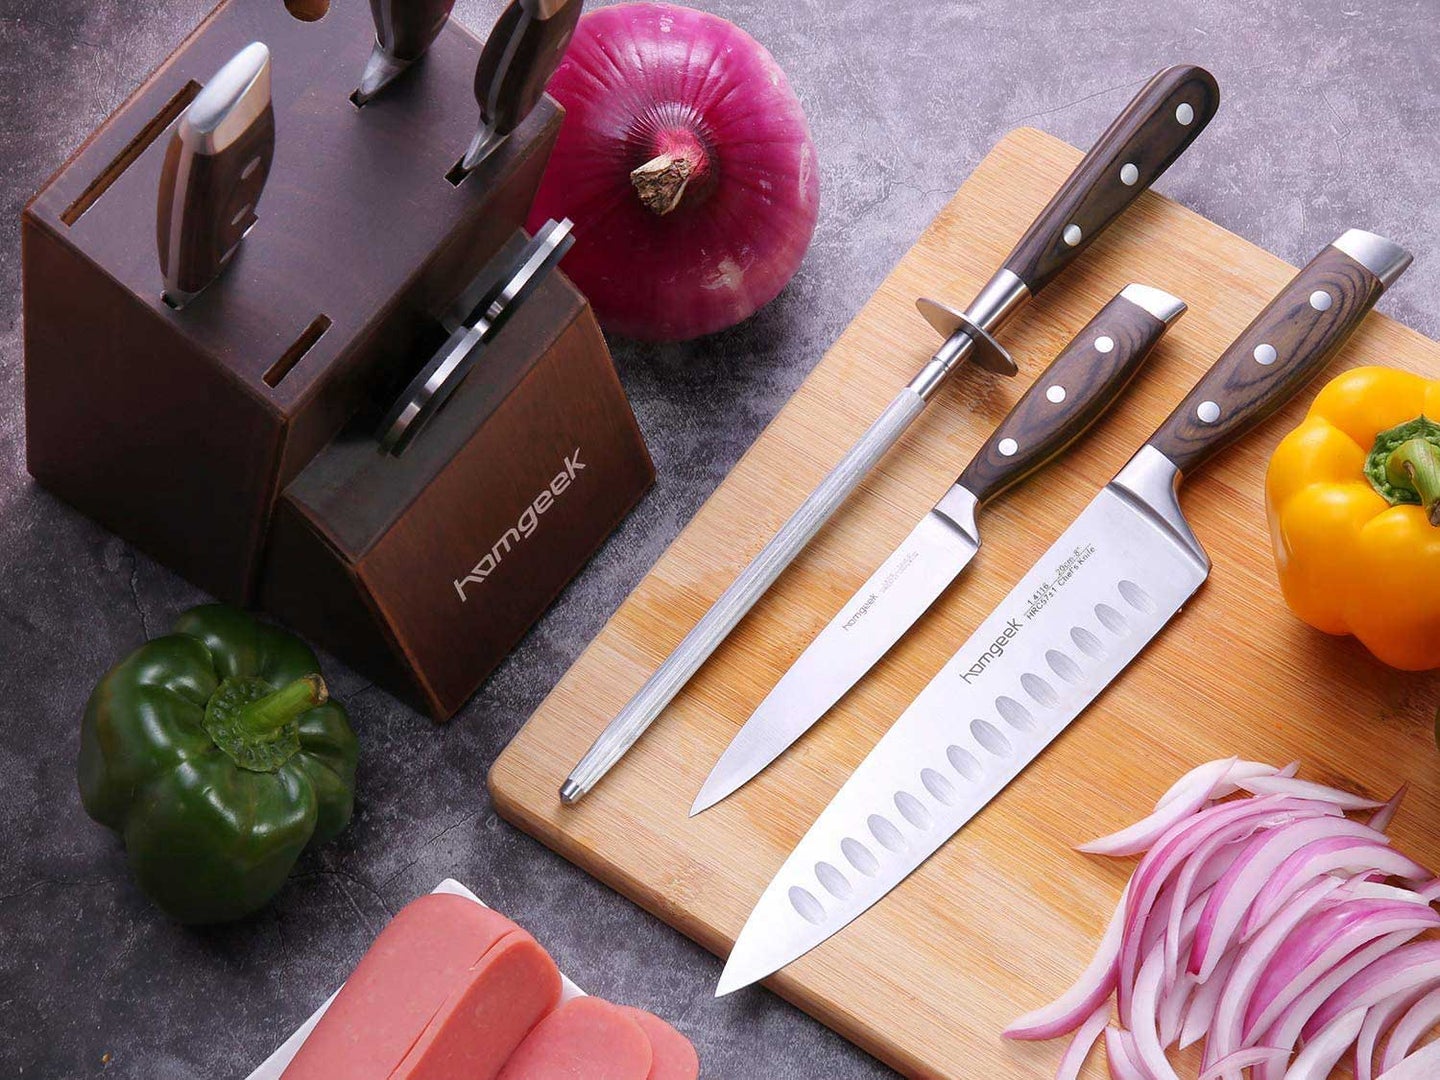 homgeek knife set with cutting board and veggies